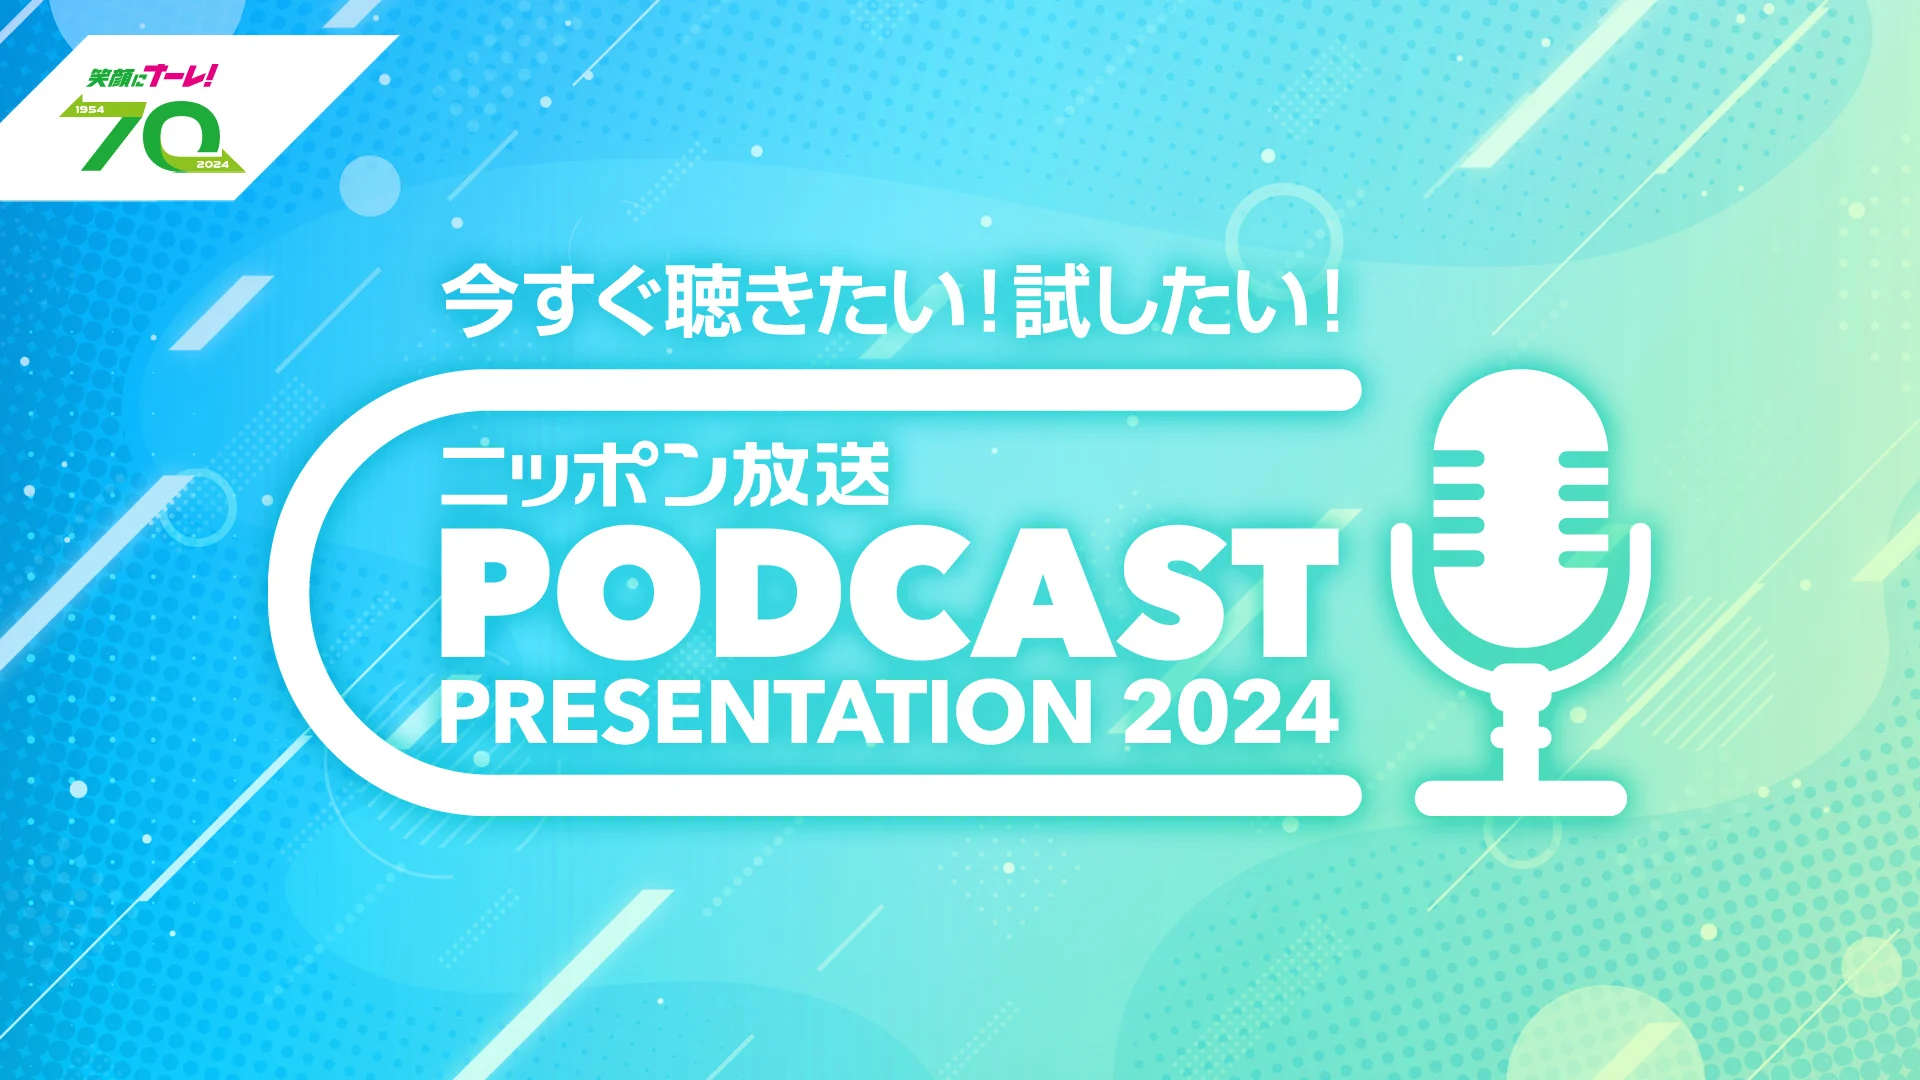 ニッポン放送、ポッドキャスト最新事情と活用法を紹介するウェビナーを7月24日に開催